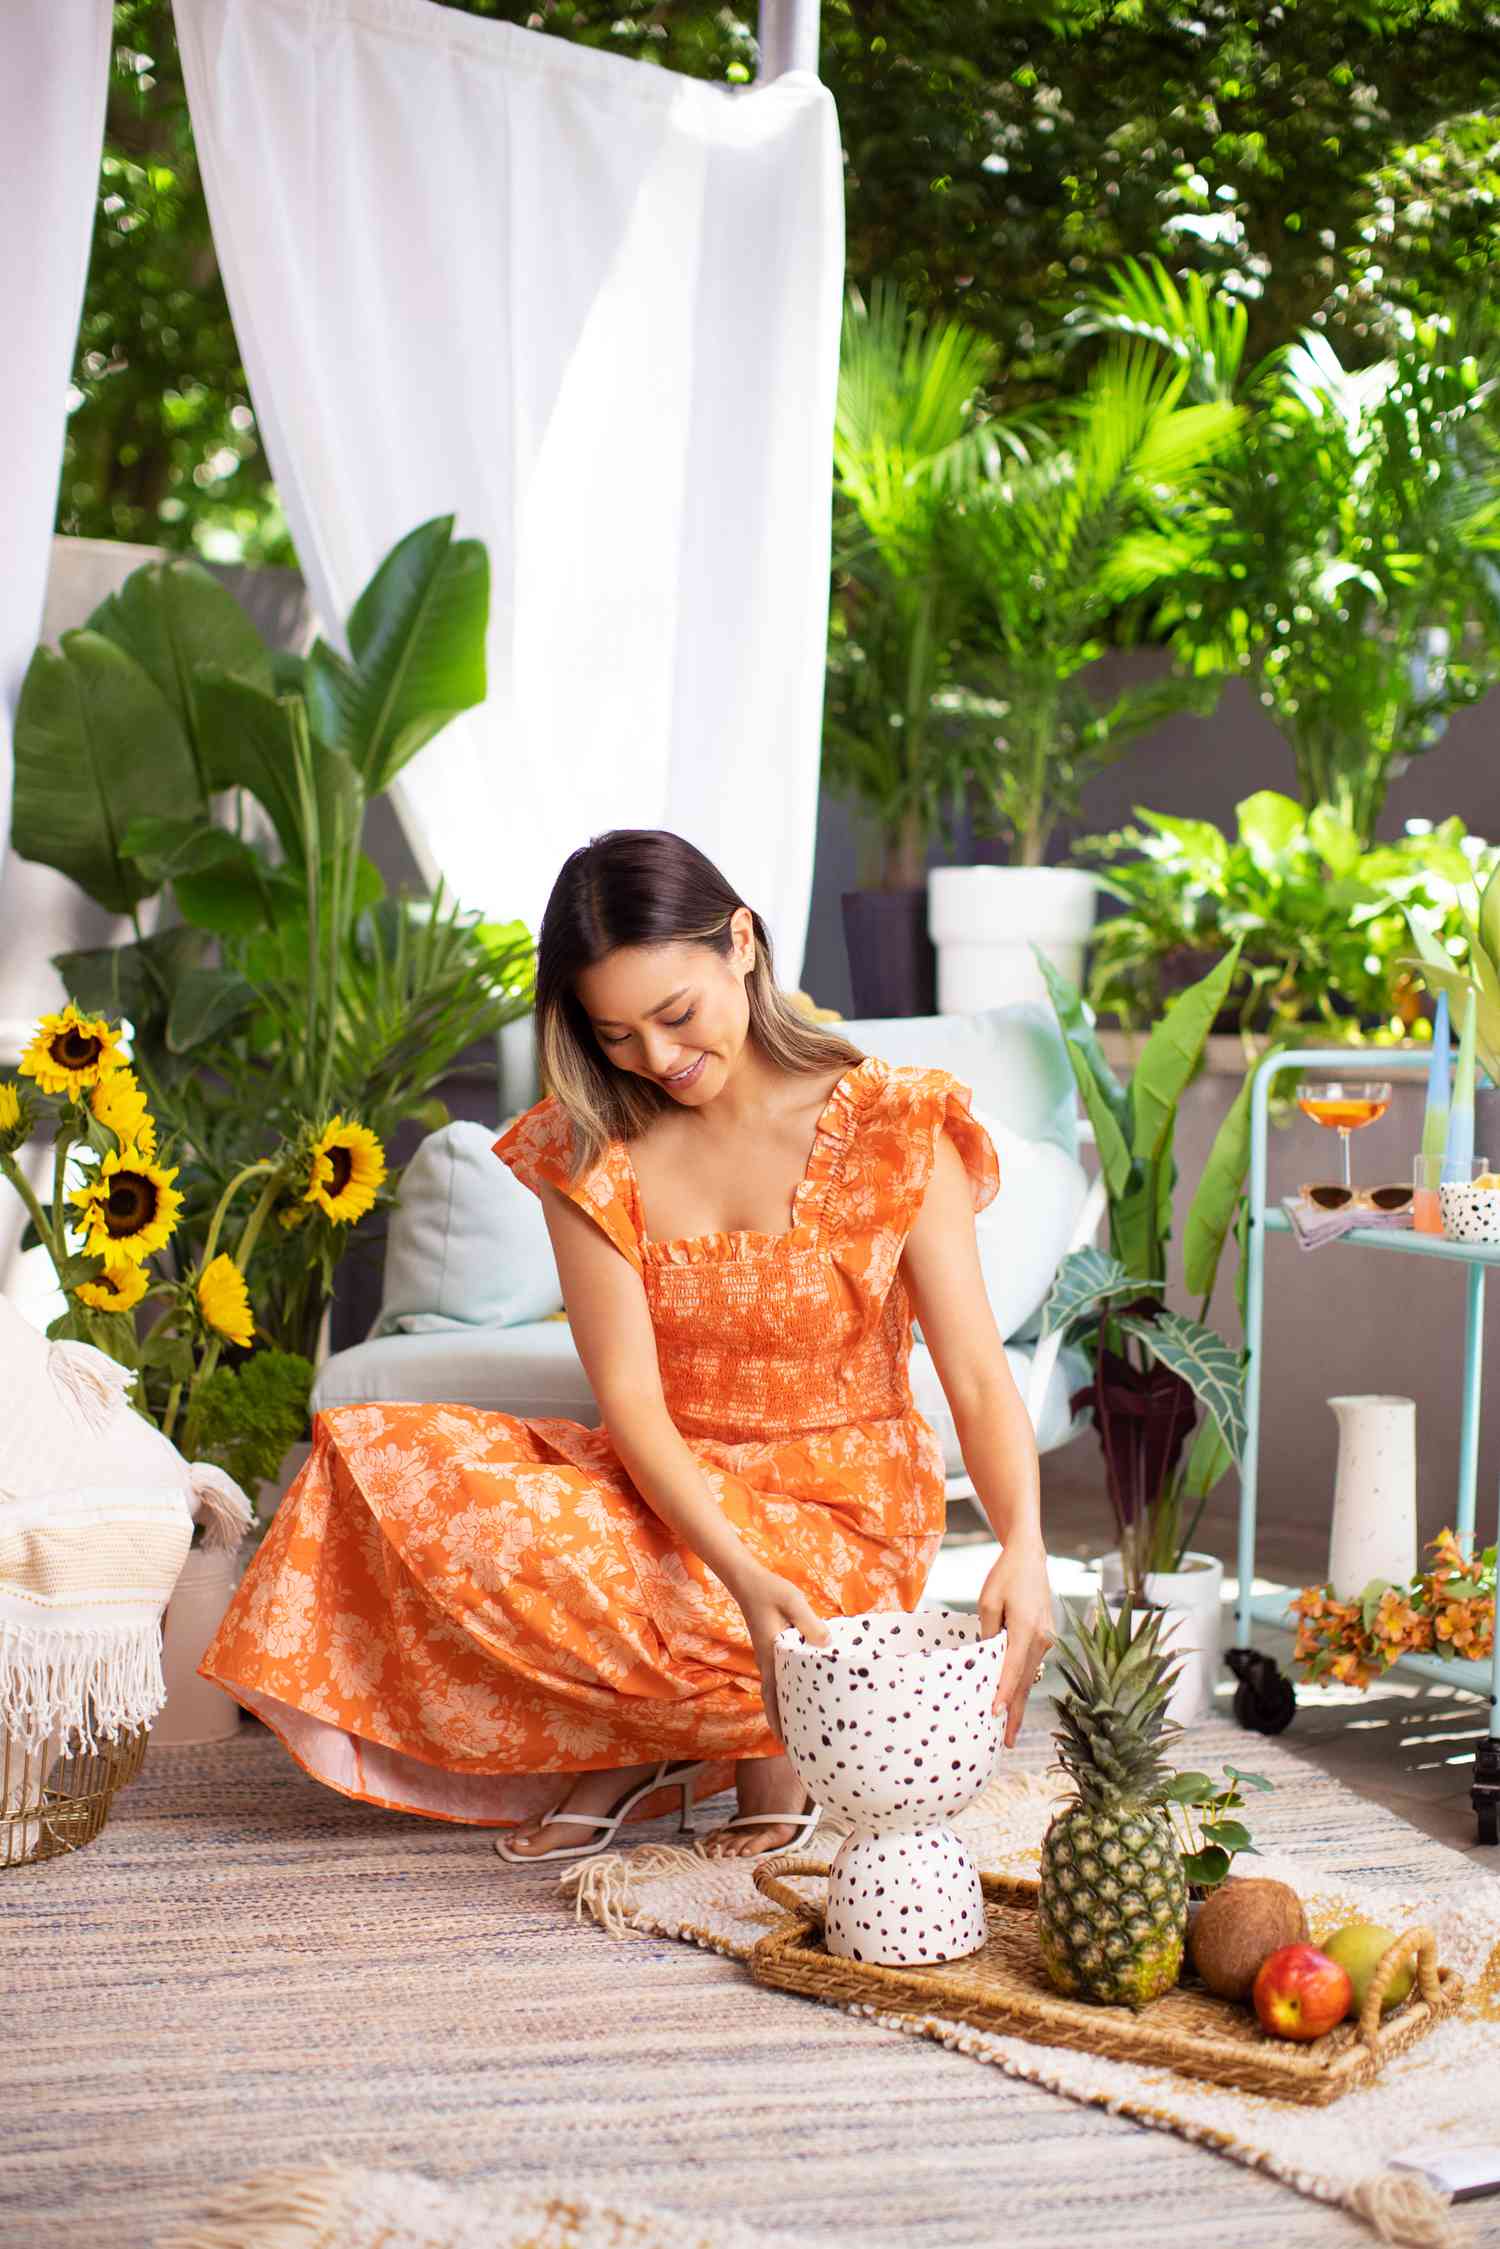 Jamie Chung arrangiert ein Tablett mit Früchten und Dekor auf einem Teppich in ihrem Hinterhof in Brooklyn